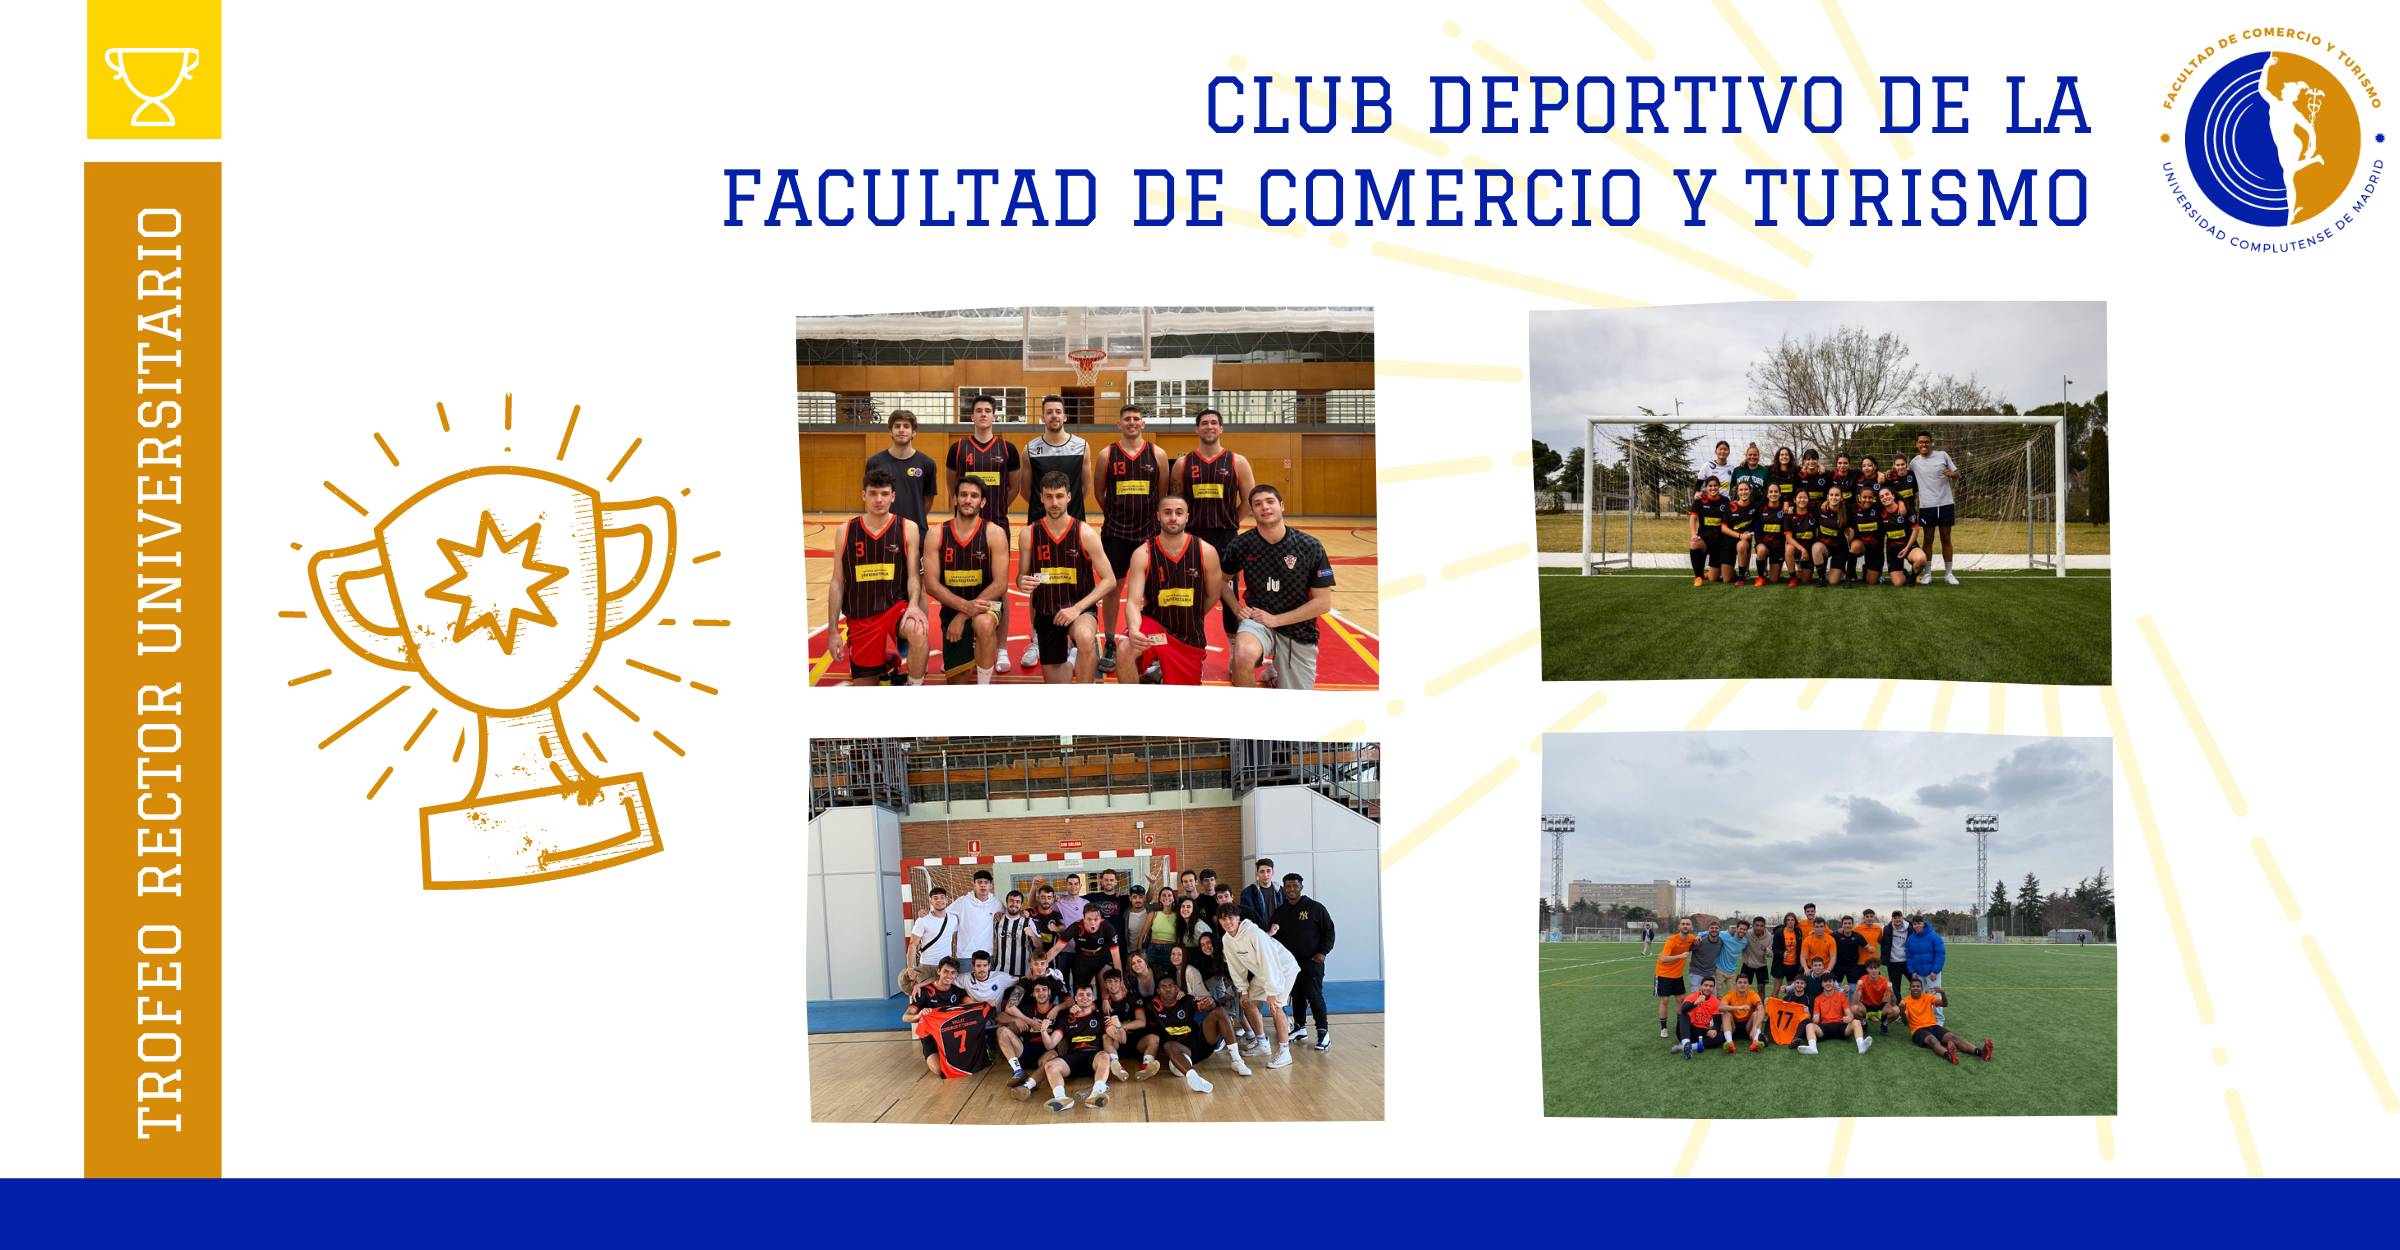 Triunfos del Club Deportivo de la Facultad de Comercio y Turismo - 1